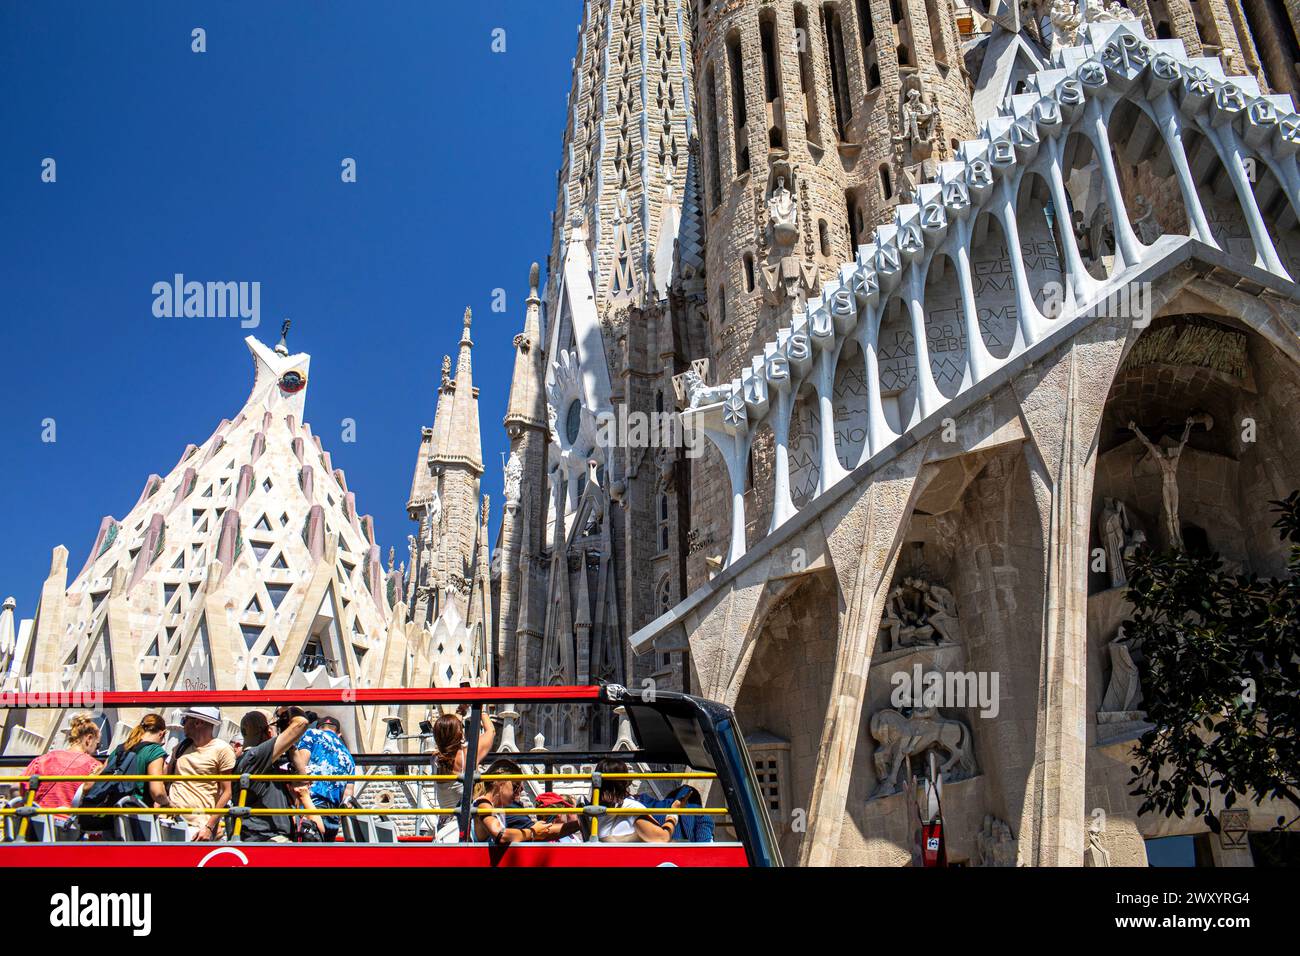 Spanien, Barcelona: Außenansicht der Sagrada Familia, entworfen vom Architekten Gaudí, ein UNESCO-Weltkulturerbe. Bus mit Touristen vor dem Stockfoto